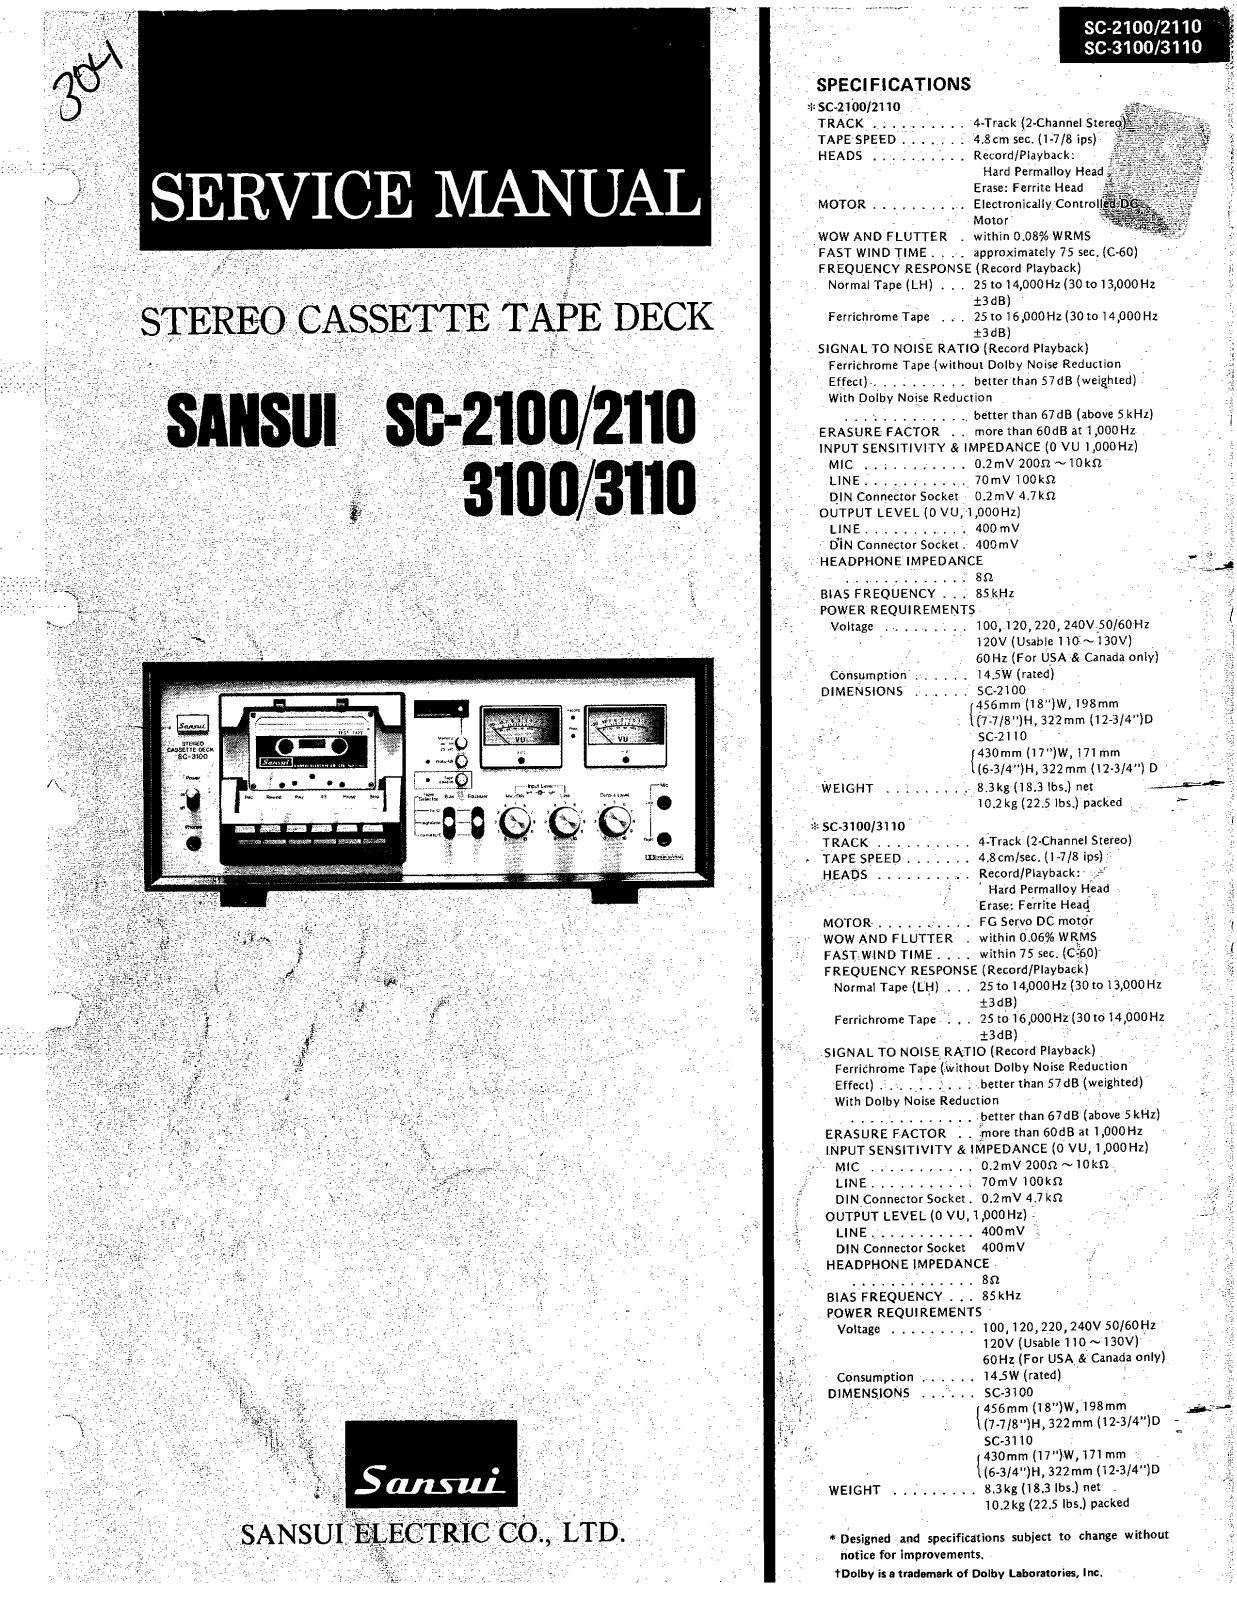 Sansui SC-2100, SC-2110, SC-3110, SC-3100 Service manual